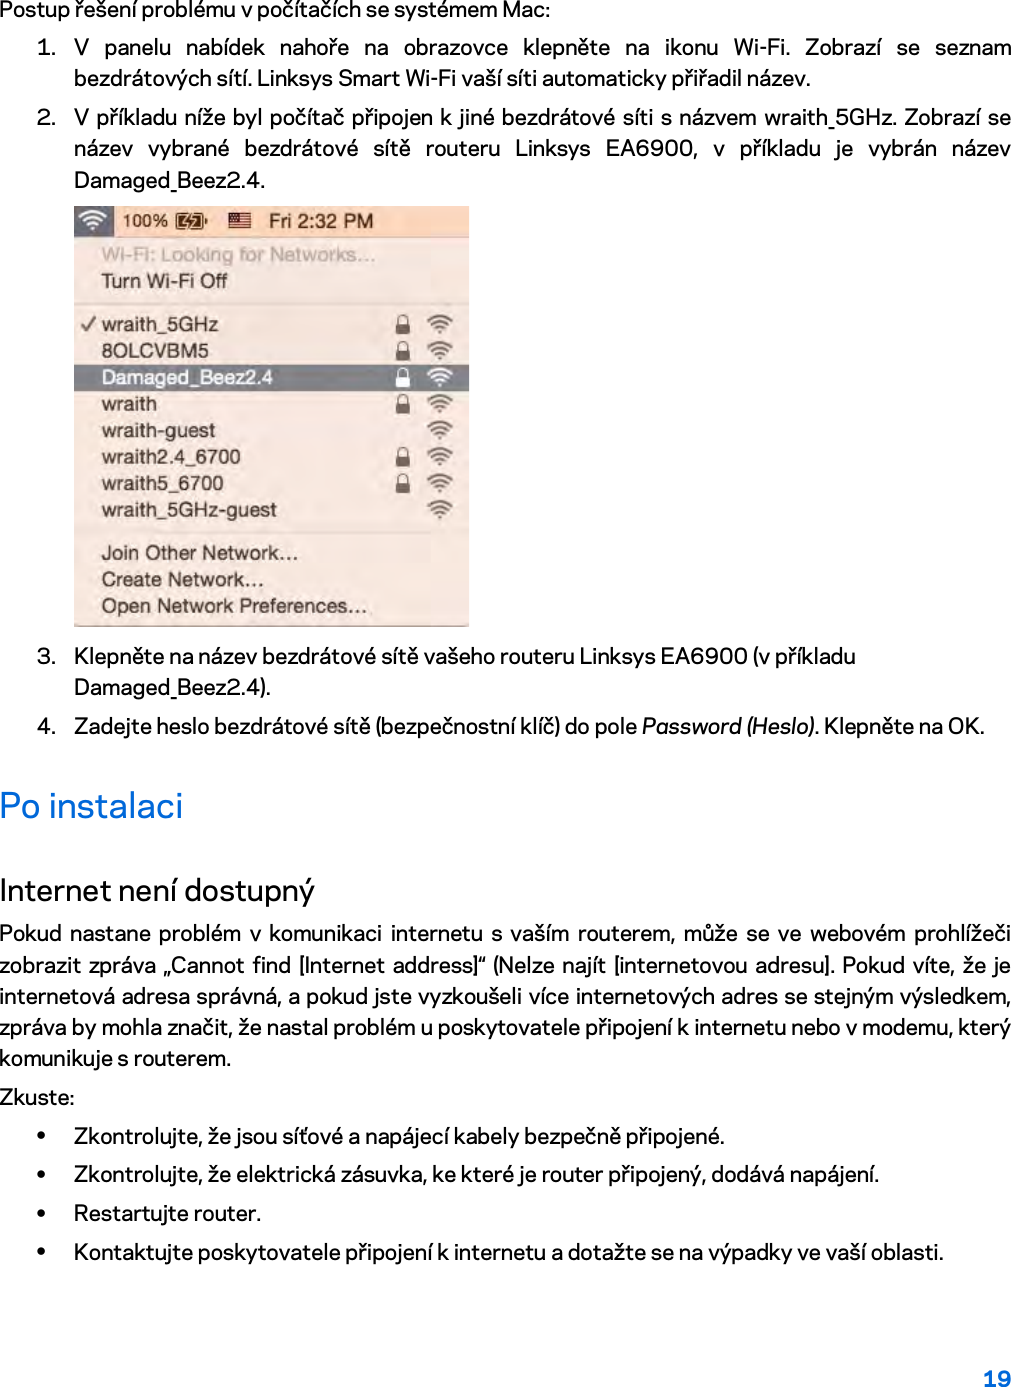 19  Postup řešení problému v počítačích se systémem Mac: 1. V panelu nabídek nahoře na obrazovce klepněte na ikonu Wi-Fi. Zobrazí se seznam bezdrátových sítí. Linksys Smart Wi-Fi vaší síti automaticky přiřadil název. 2. V příkladu níže byl počítač připojen k jiné bezdrátové síti s názvem wraith_5GHz. Zobrazí se název vybrané bezdrátové sítě routeru Linksys EA6900, v příkladu je vybrán název Damaged_Beez2.4.  3. Klepněte na název bezdrátové sítě vašeho routeru Linksys EA6900 (v příkladu Damaged_Beez2.4). 4. Zadejte heslo bezdrátové sítě (bezpečnostní klíč) do pole Password (Heslo). Klepněte na OK. Po instalaci Internet není dostupný Pokud nastane problém v komunikaci internetu s vaším routerem, může se ve webovém prohlížeči zobrazit zpráva „Cannot find [Internet address]“ (Nelze najít [internetovou adresu]. Pokud víte, že je internetová adresa správná, a pokud jste vyzkoušeli více internetových adres se stejným výsledkem, zpráva by mohla značit, že nastal problém u poskytovatele připojení k internetu nebo v modemu, který komunikuje s routerem. Zkuste: • Zkontrolujte, že jsou síťové a napájecí kabely bezpečně připojené. • Zkontrolujte, že elektrická zásuvka, ke které je router připojený, dodává napájení. • Restartujte router. • Kontaktujte poskytovatele připojení k internetu a dotažte se na výpadky ve vaší oblasti. 